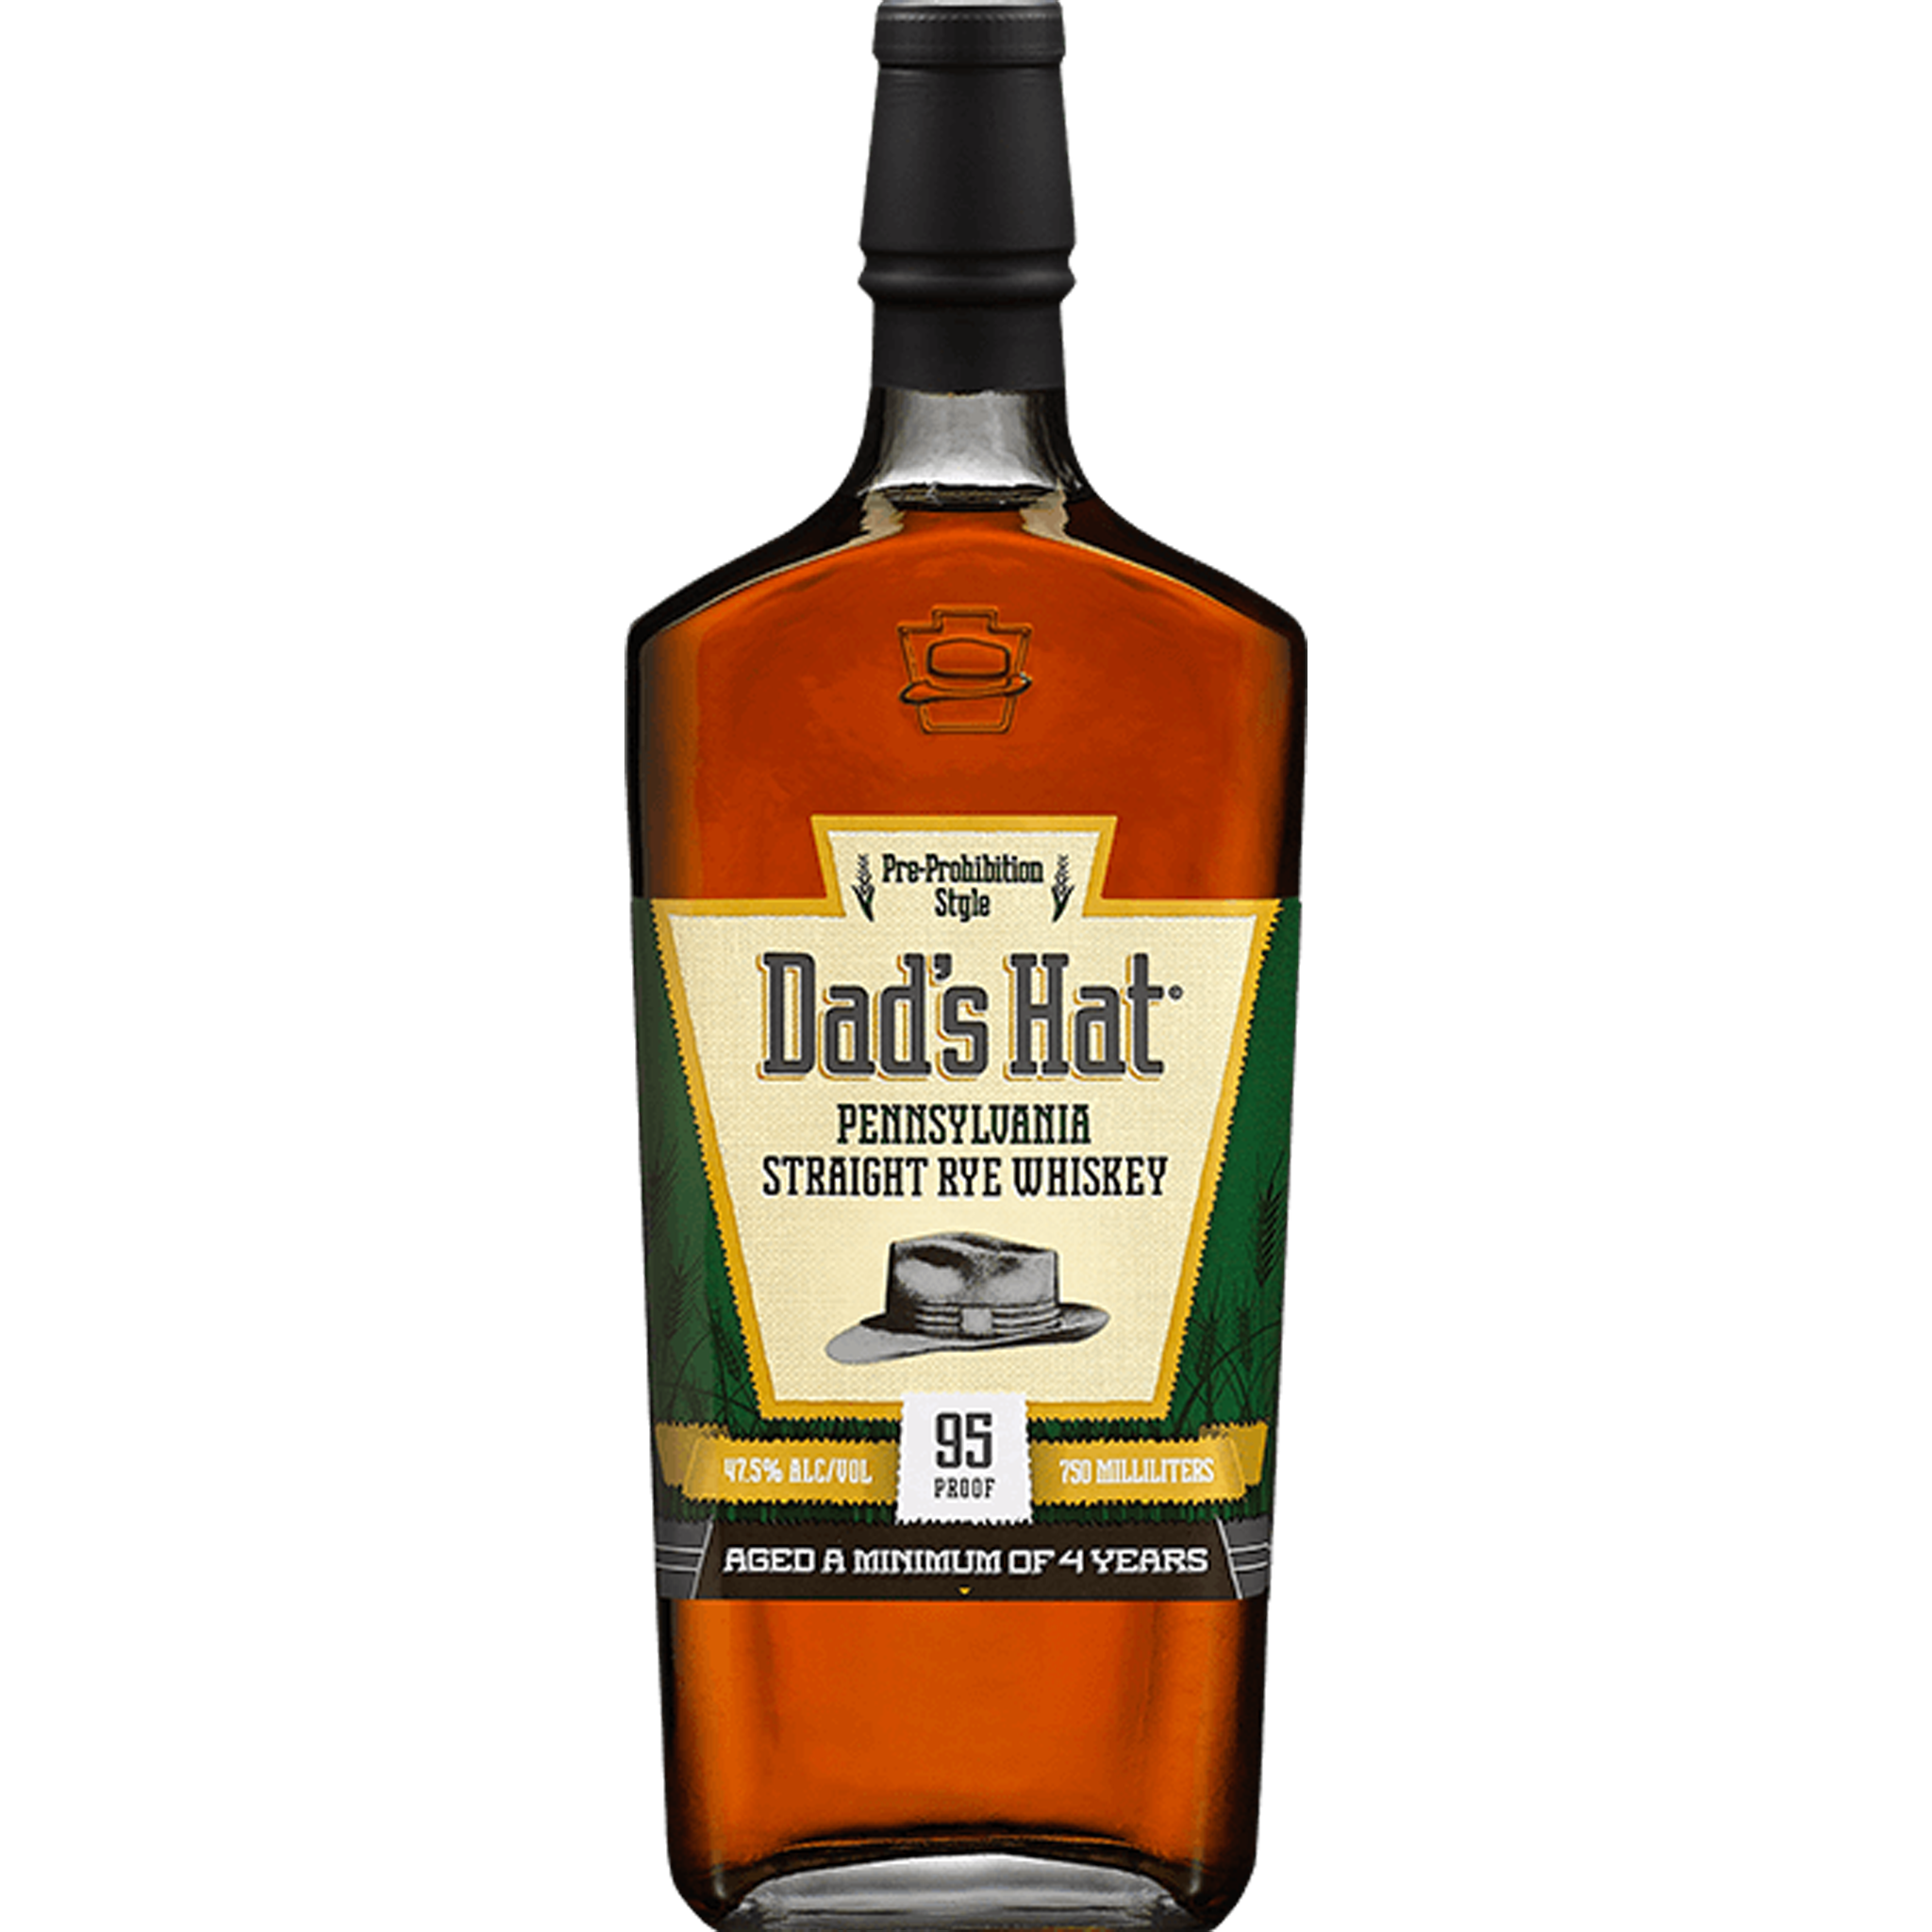 Dad's Hat Pennsylvania Straight Rye Whiskey